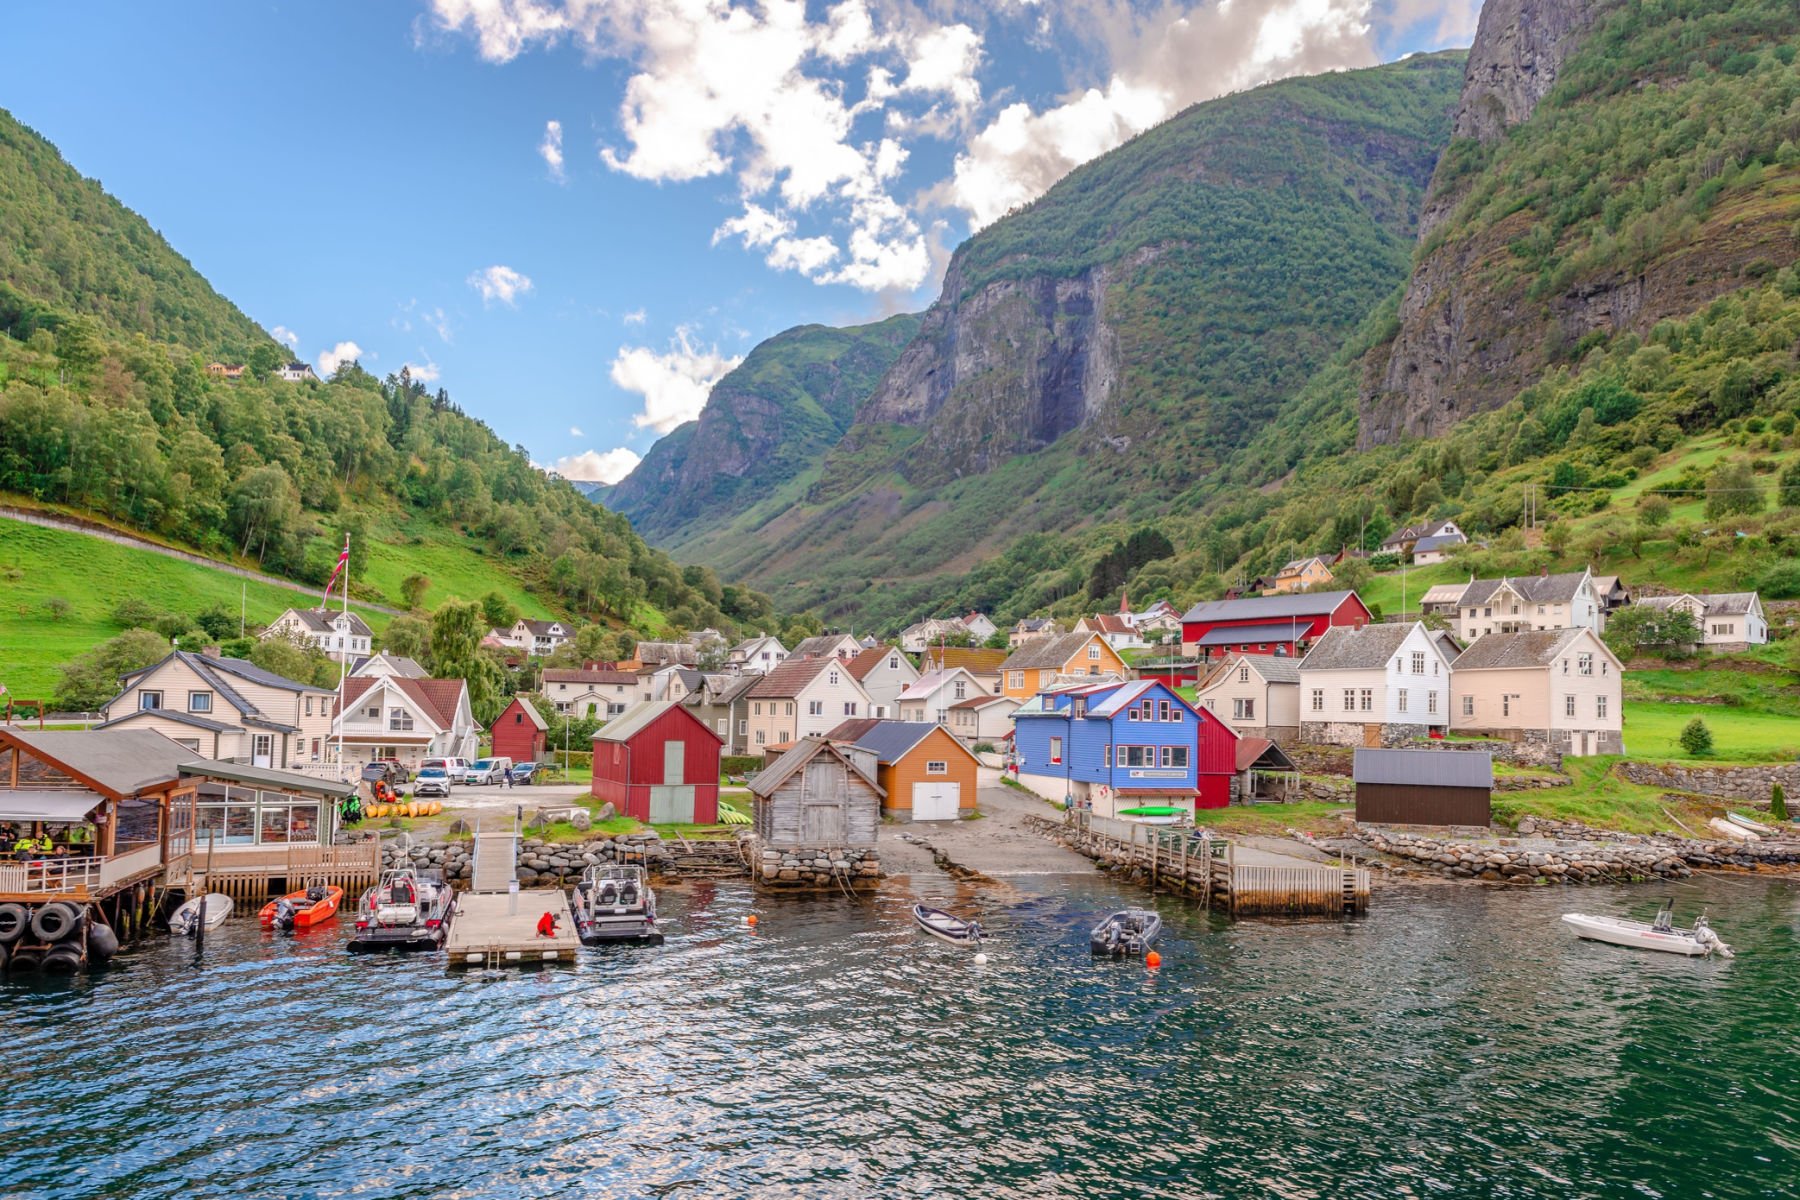 Undredal en Norvège : 5 raisons de visiter ce superbe village des fjords - 29